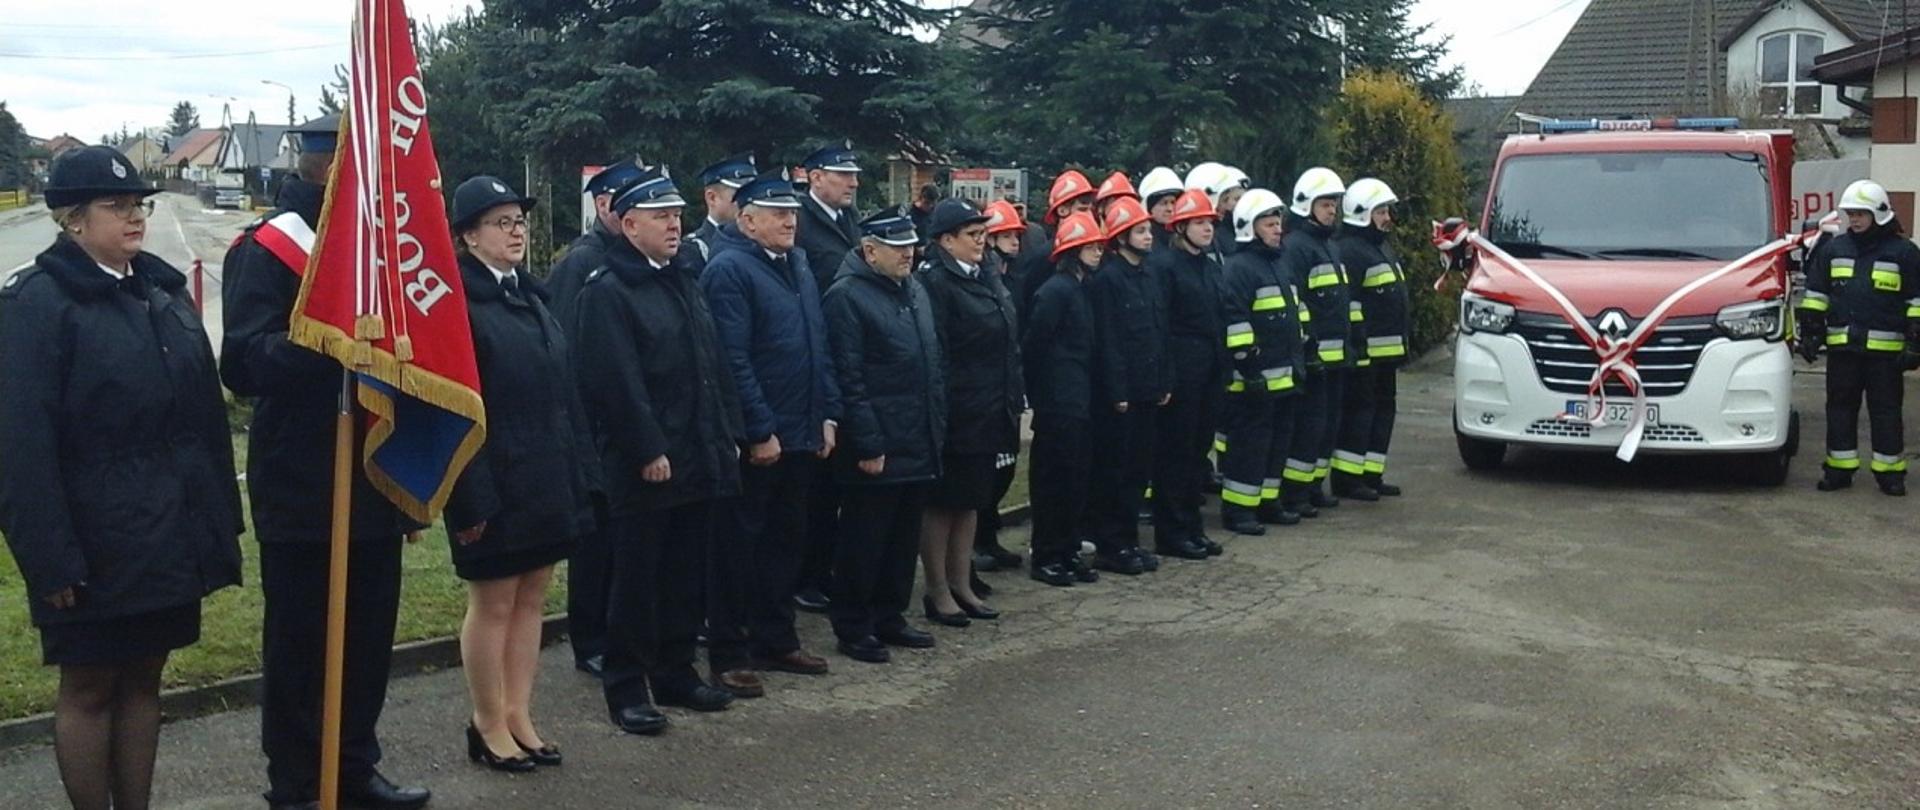 Na zdjęciu widać druhów z OSP Borkowo wraz ze sztandarem, którzy stoją obok nowo przekazanego samochodu pożarniczego.